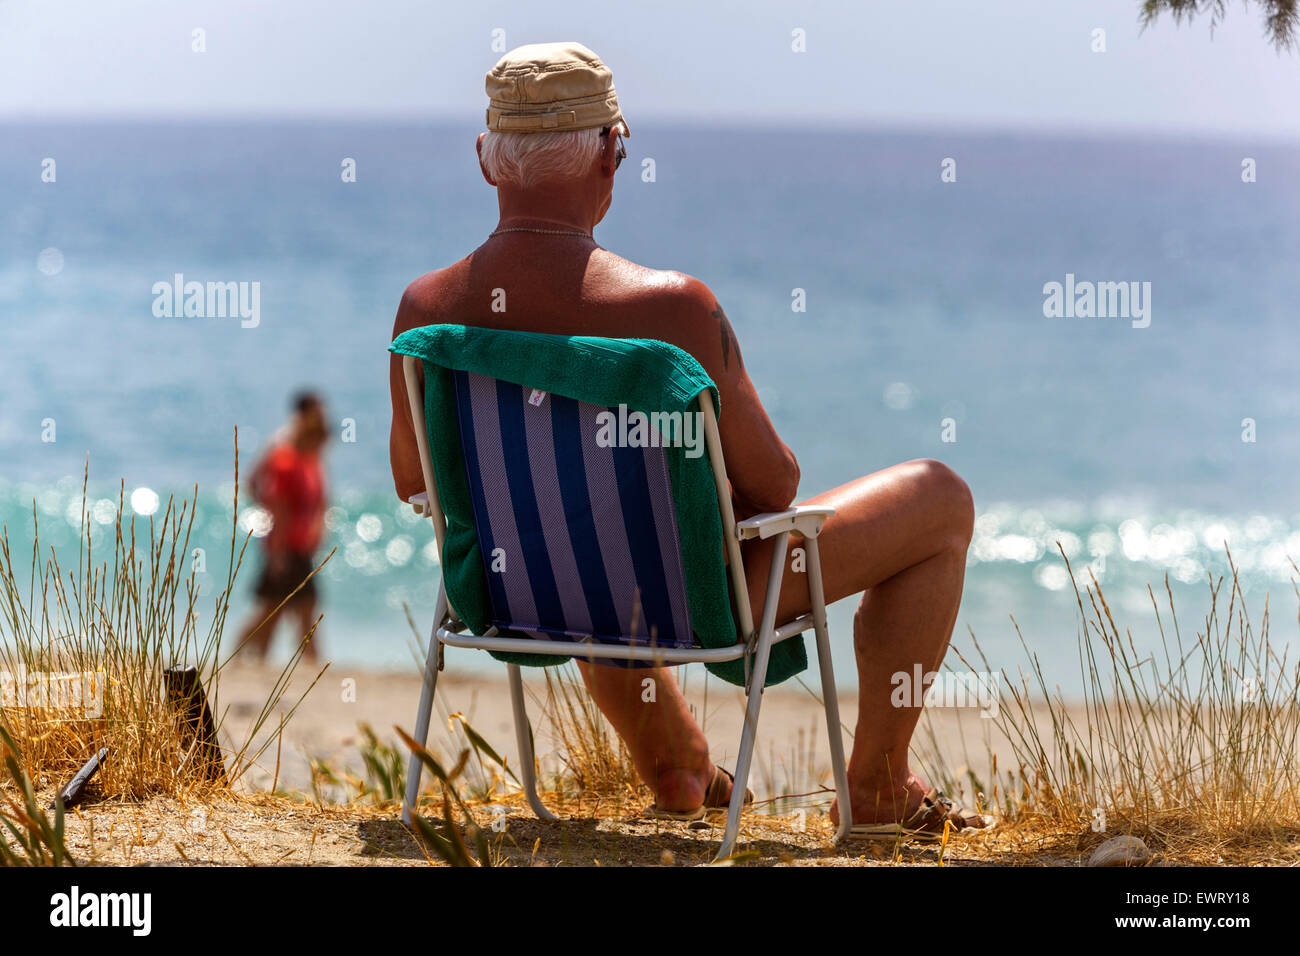 Senior Mann in einem Klappstuhl, der das Meer beobachtet. Der Strand von Plakias, Südkreta, Griechenland. Sonnenbaden Senior in der Strandsonne Stockfoto